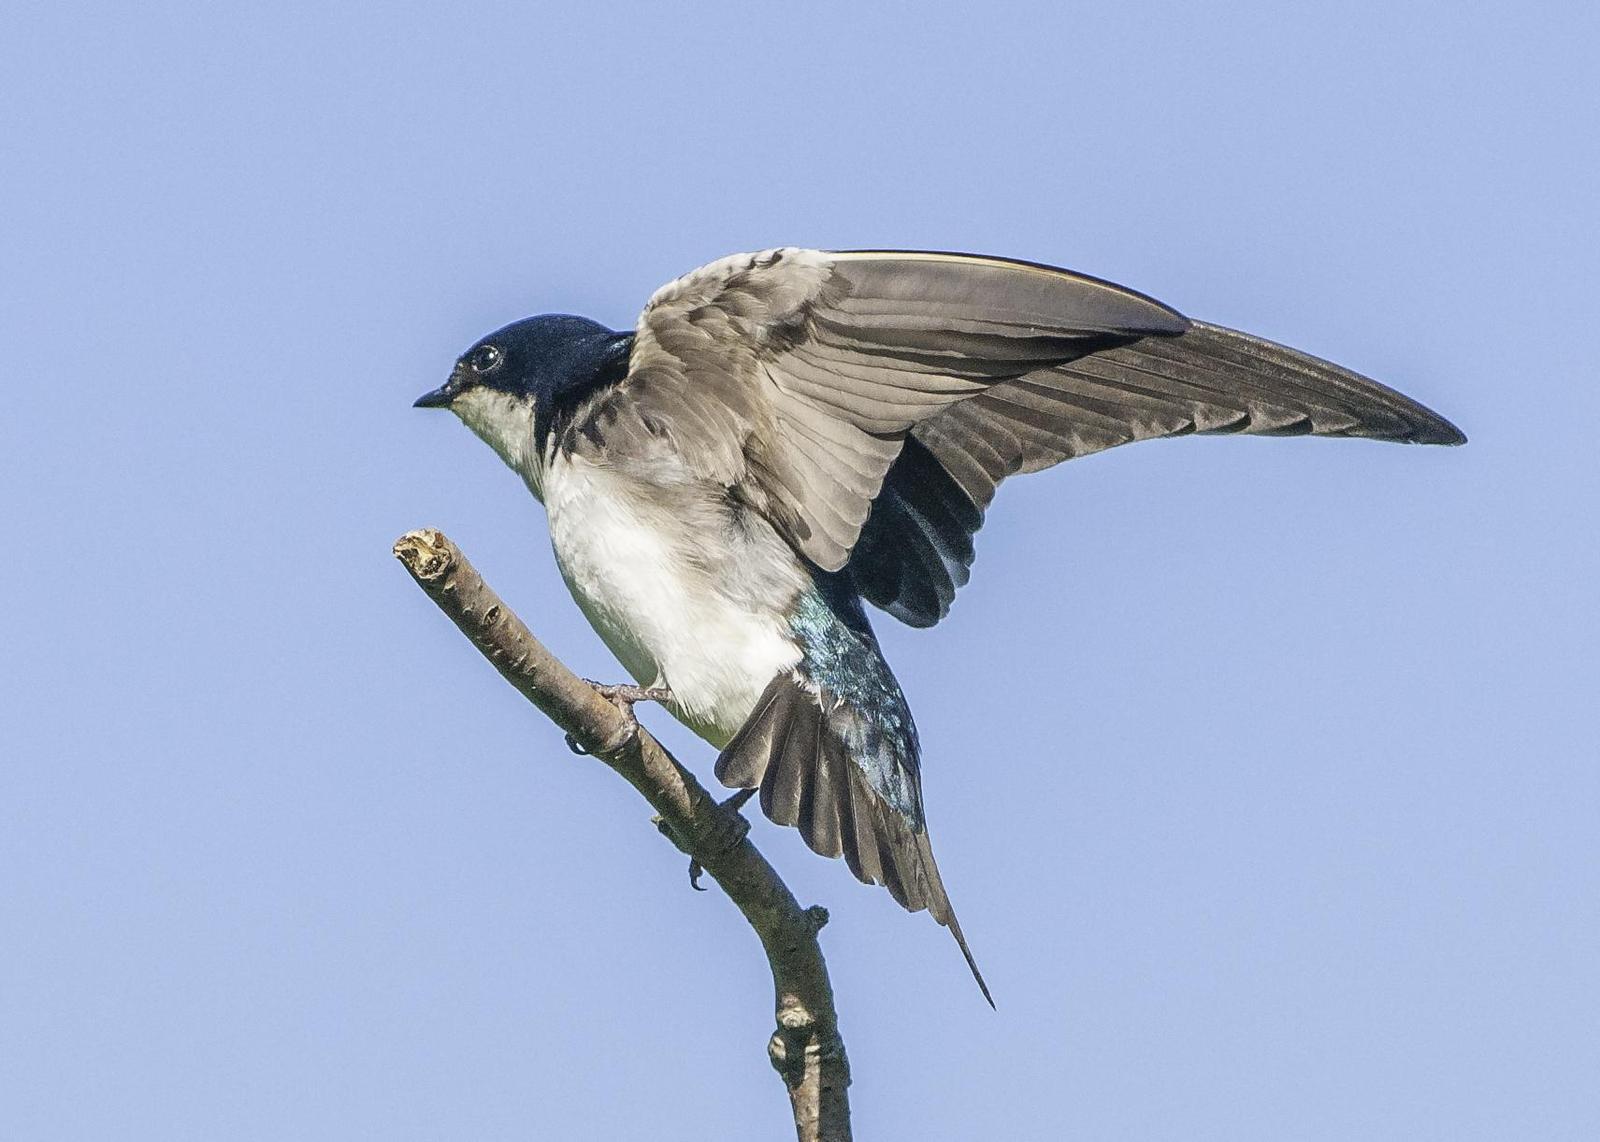 Tree Swallow Photo by Mason Rose